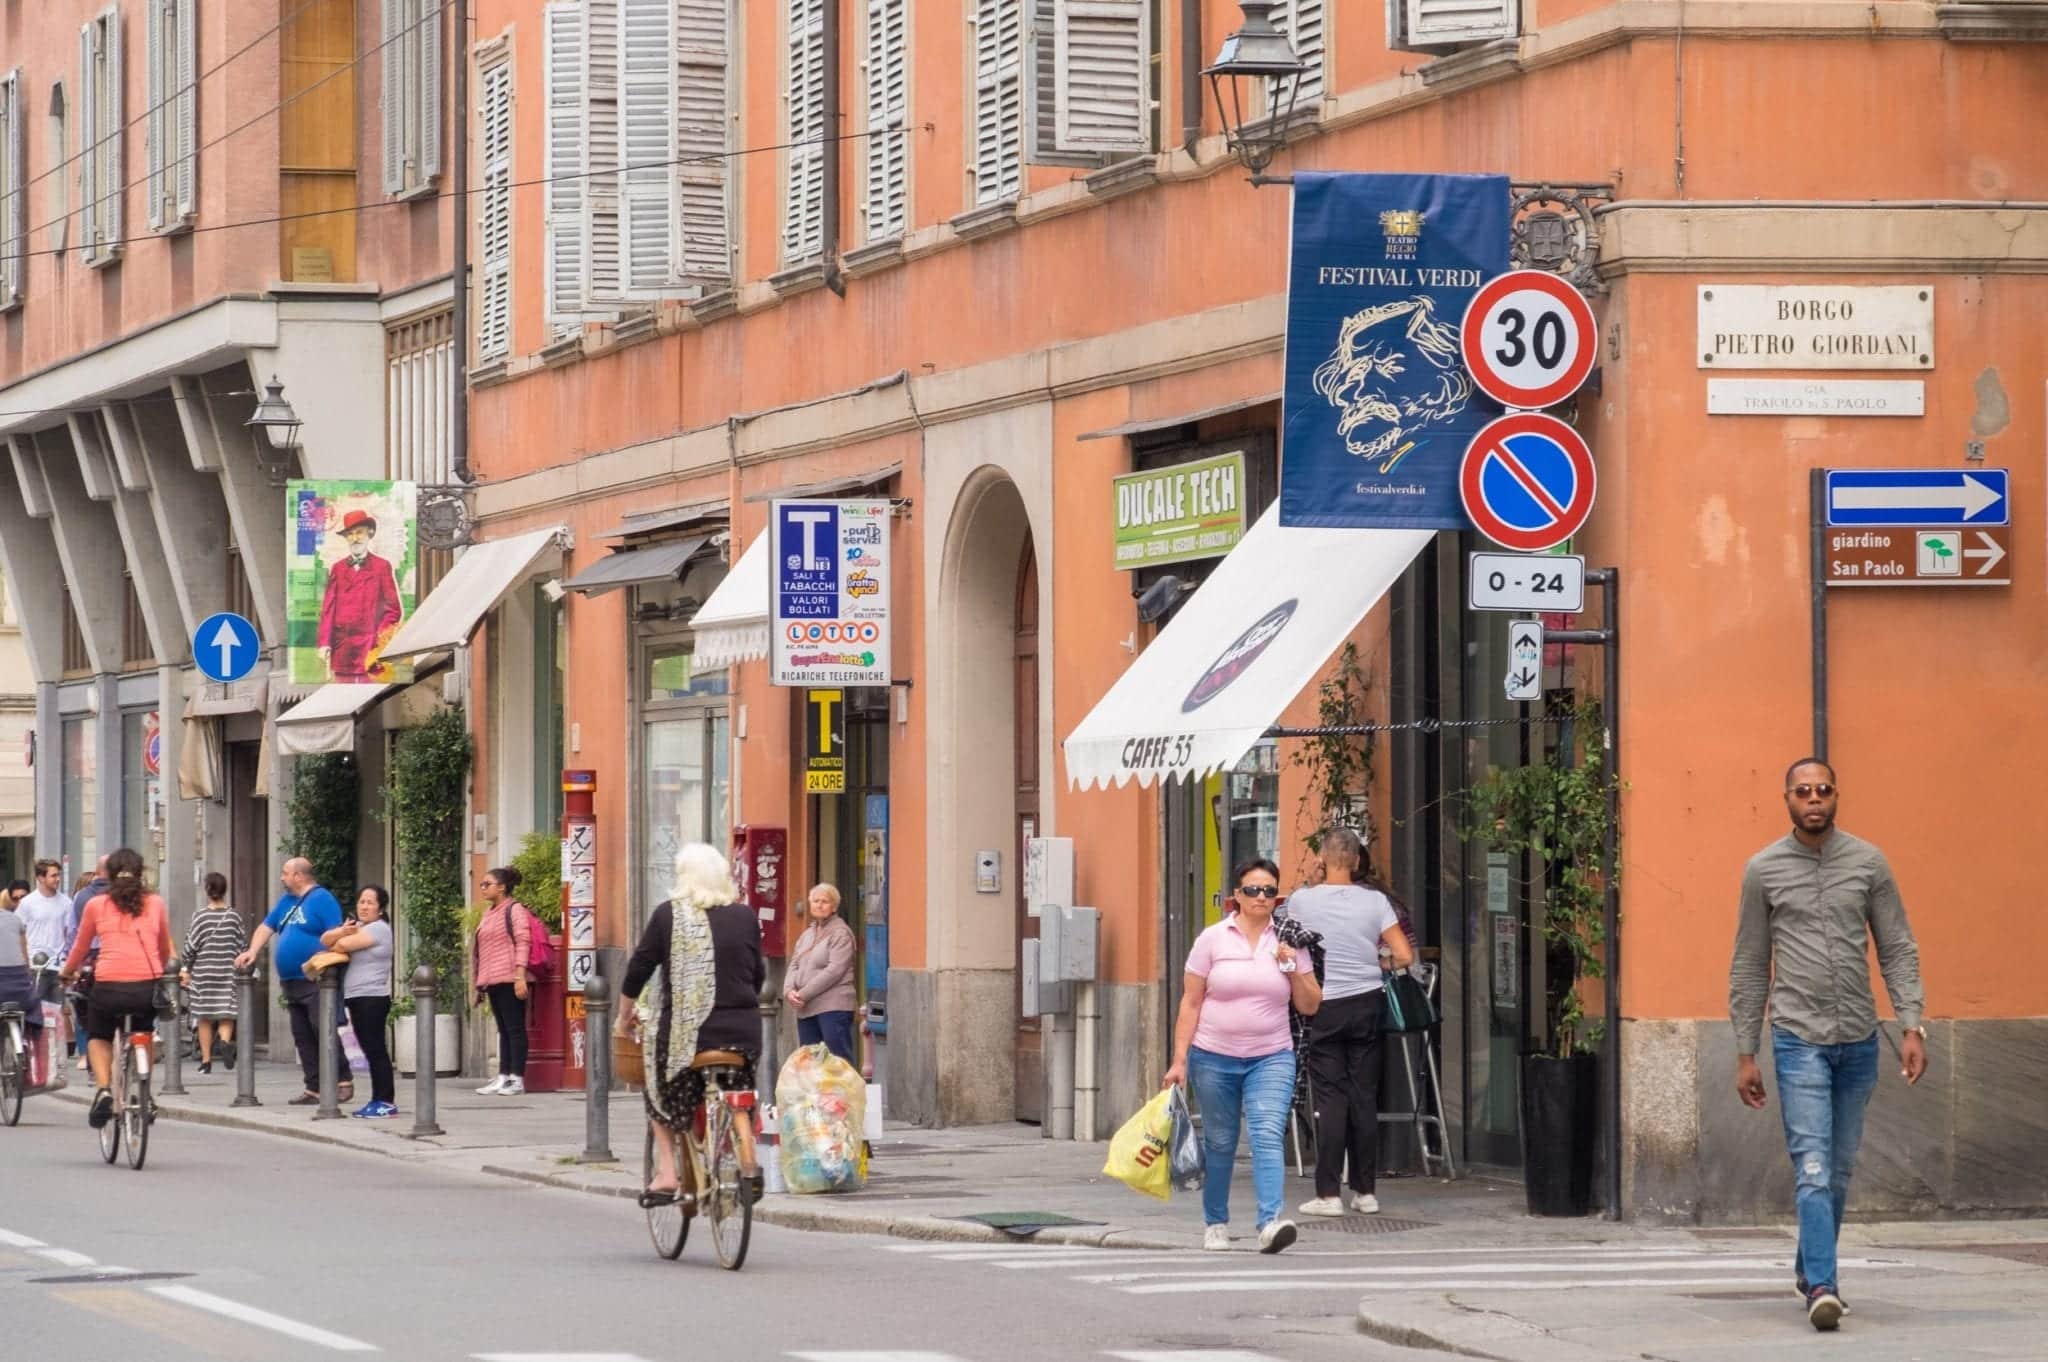 People walking down the street in front of orange buildings in Parma.